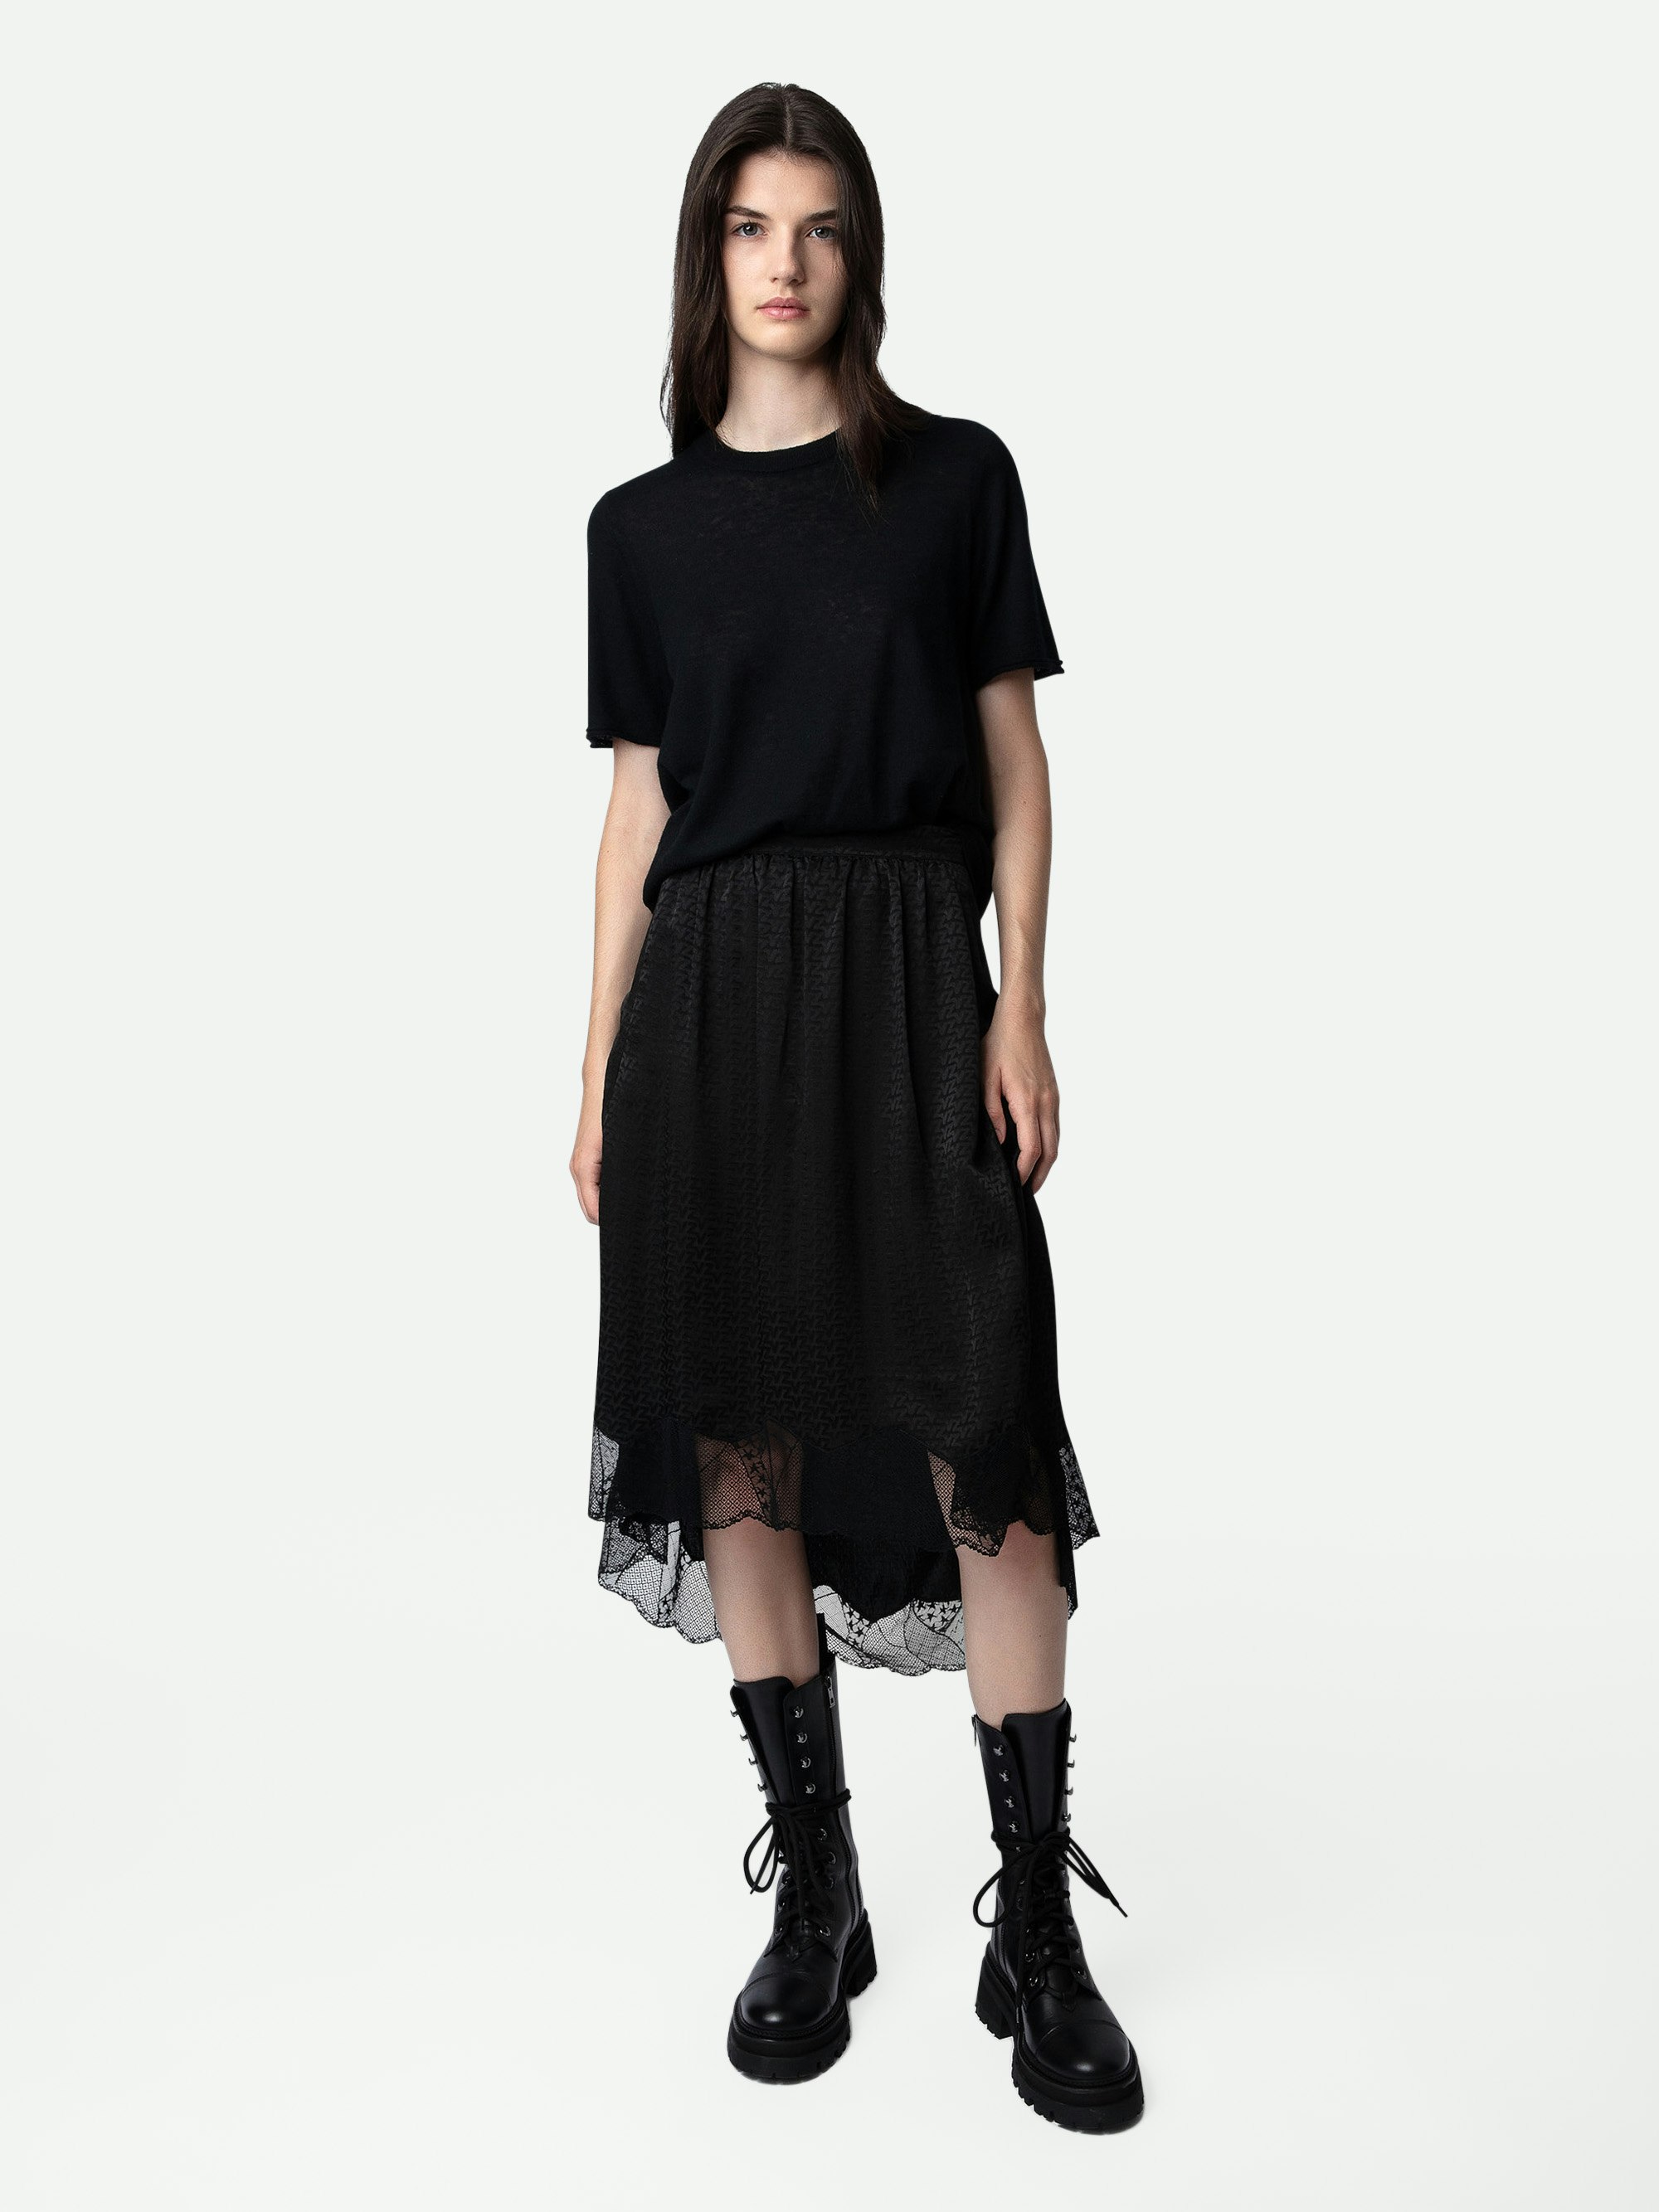 Joslin Jacquard Skirt ZV 3D - Women’s black silk jacquard skirt.